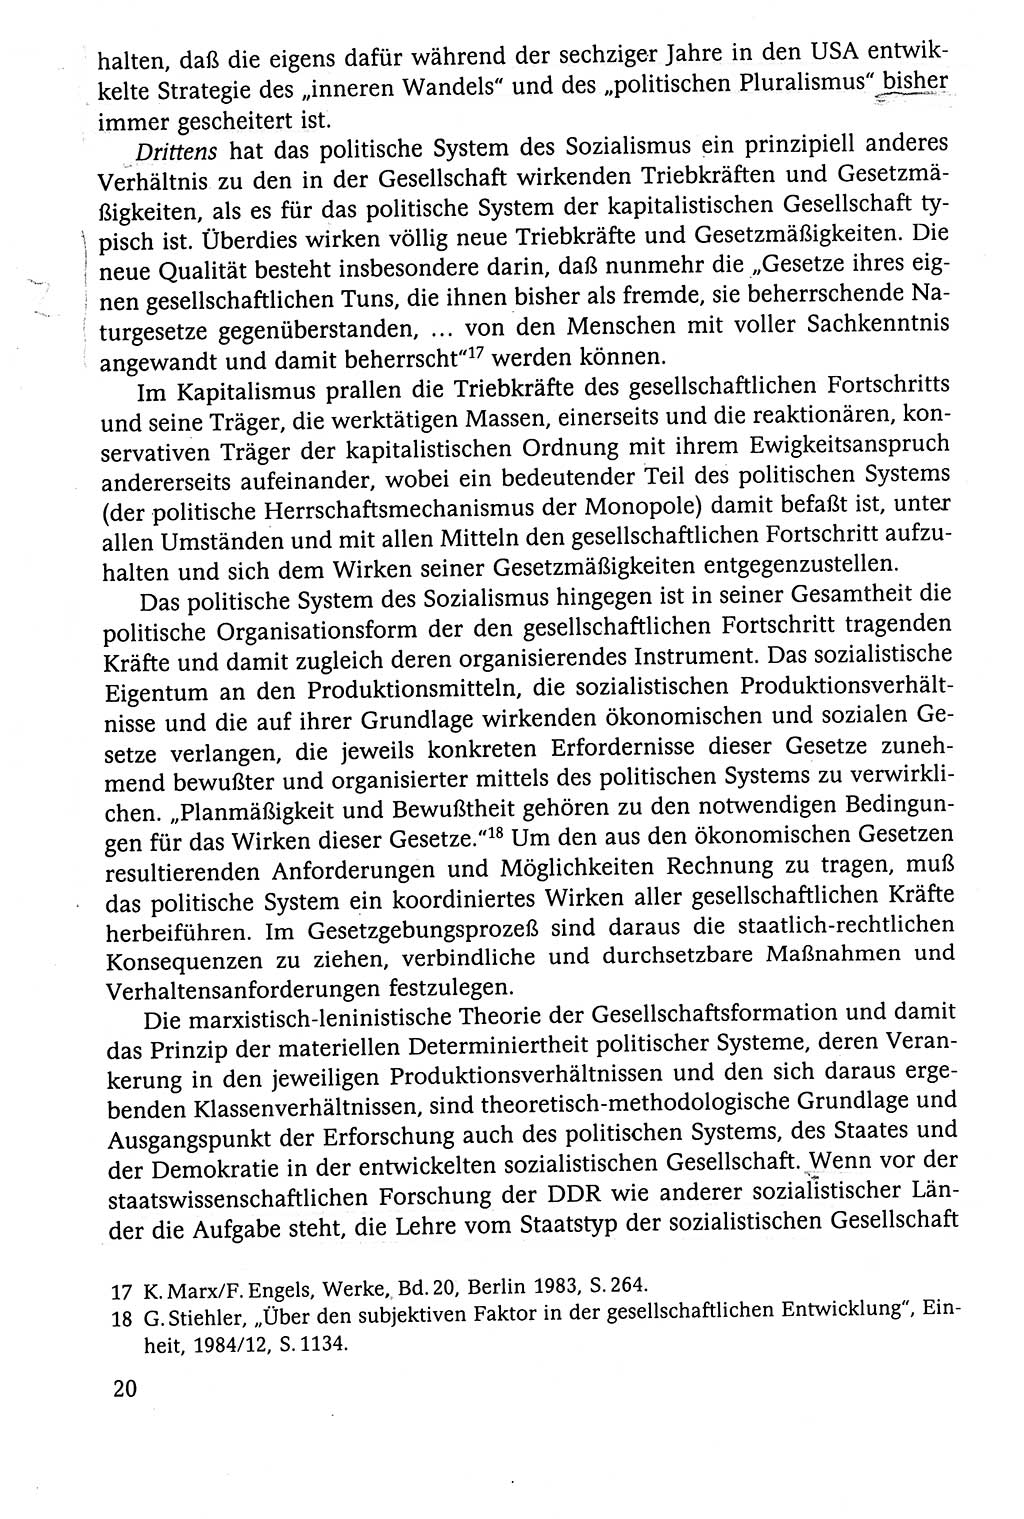 Der Staat im politischen System der DDR (Deutsche Demokratische Republik) 1986, Seite 20 (St. pol. Sys. DDR 1986, S. 20)